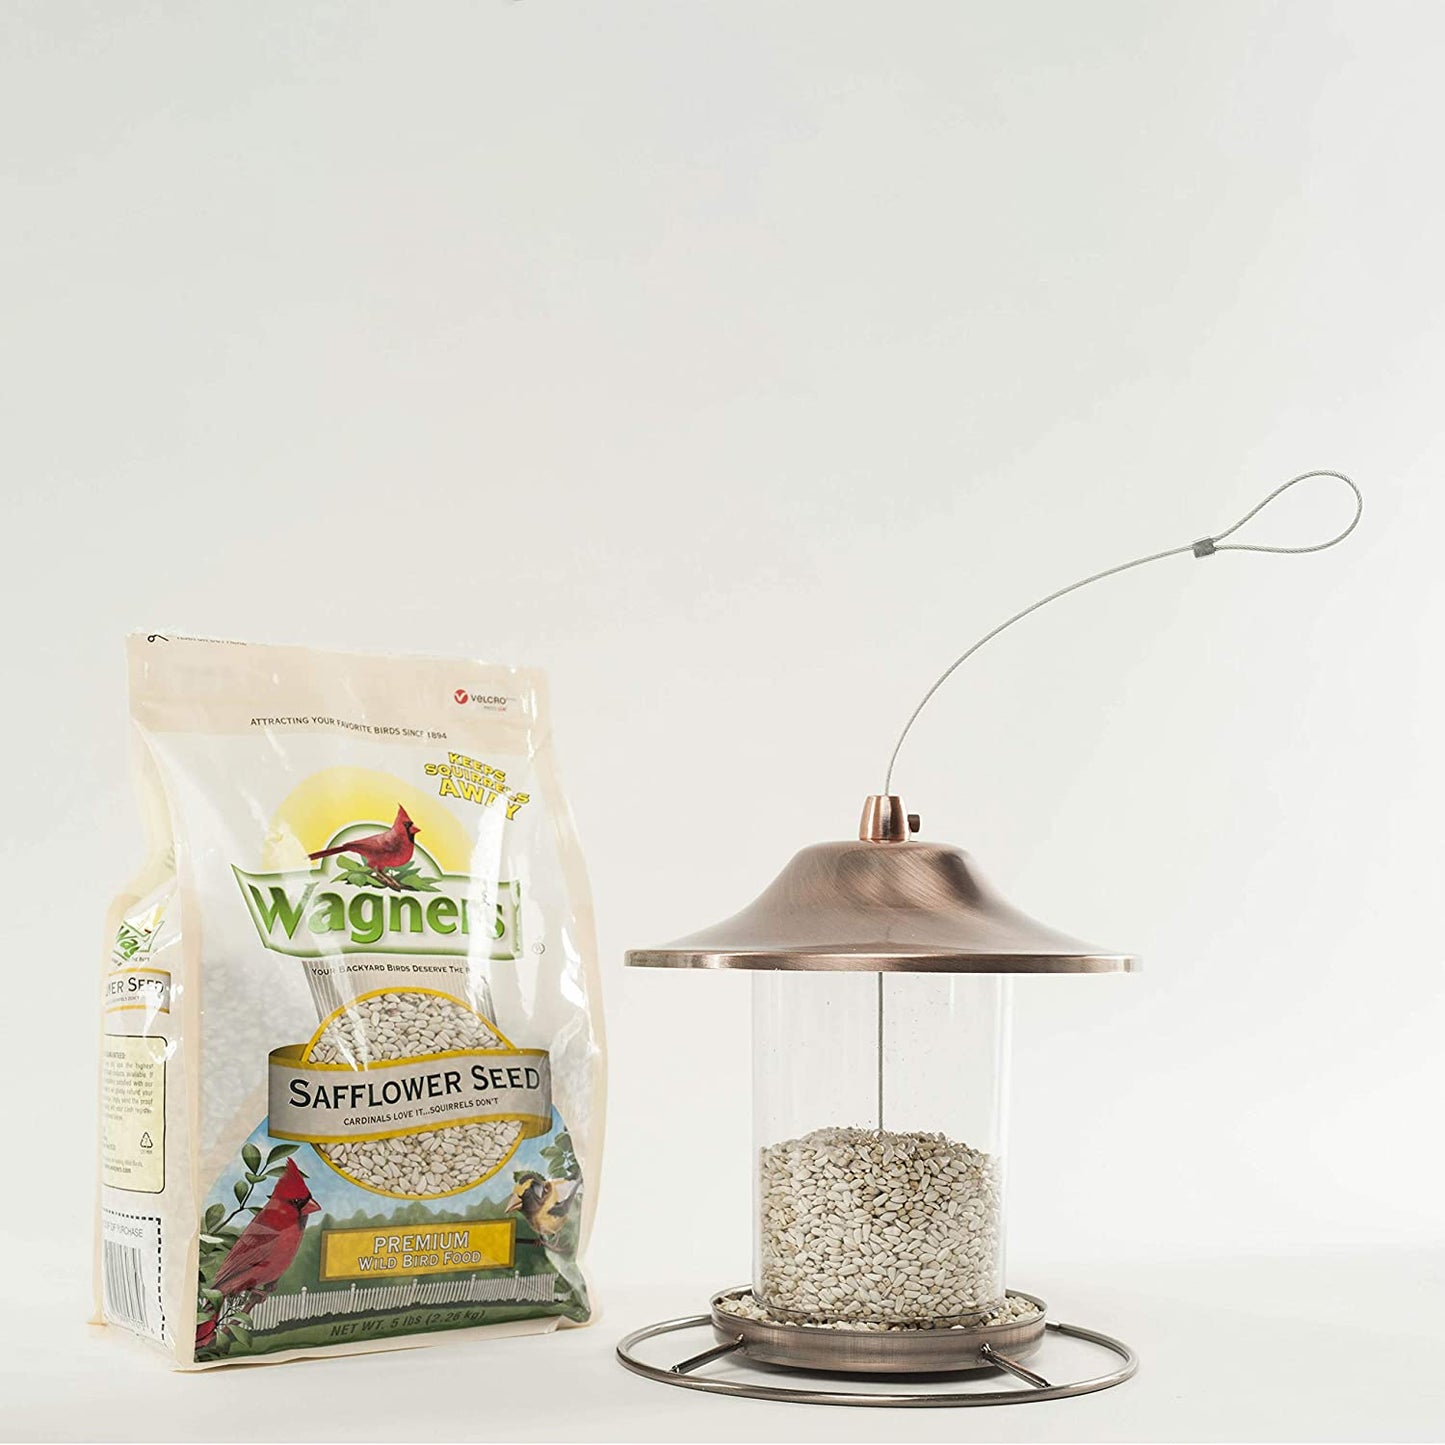 Wagner's 57075 Safflower Seed Wild Bird Food, 5-Pound Bag